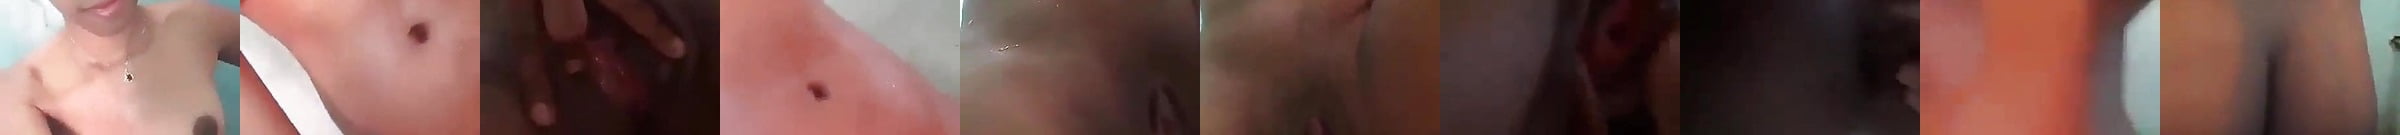 Vidéos Porno Sipa Gasy Tia Milely Durée En Vedette Xhamster 